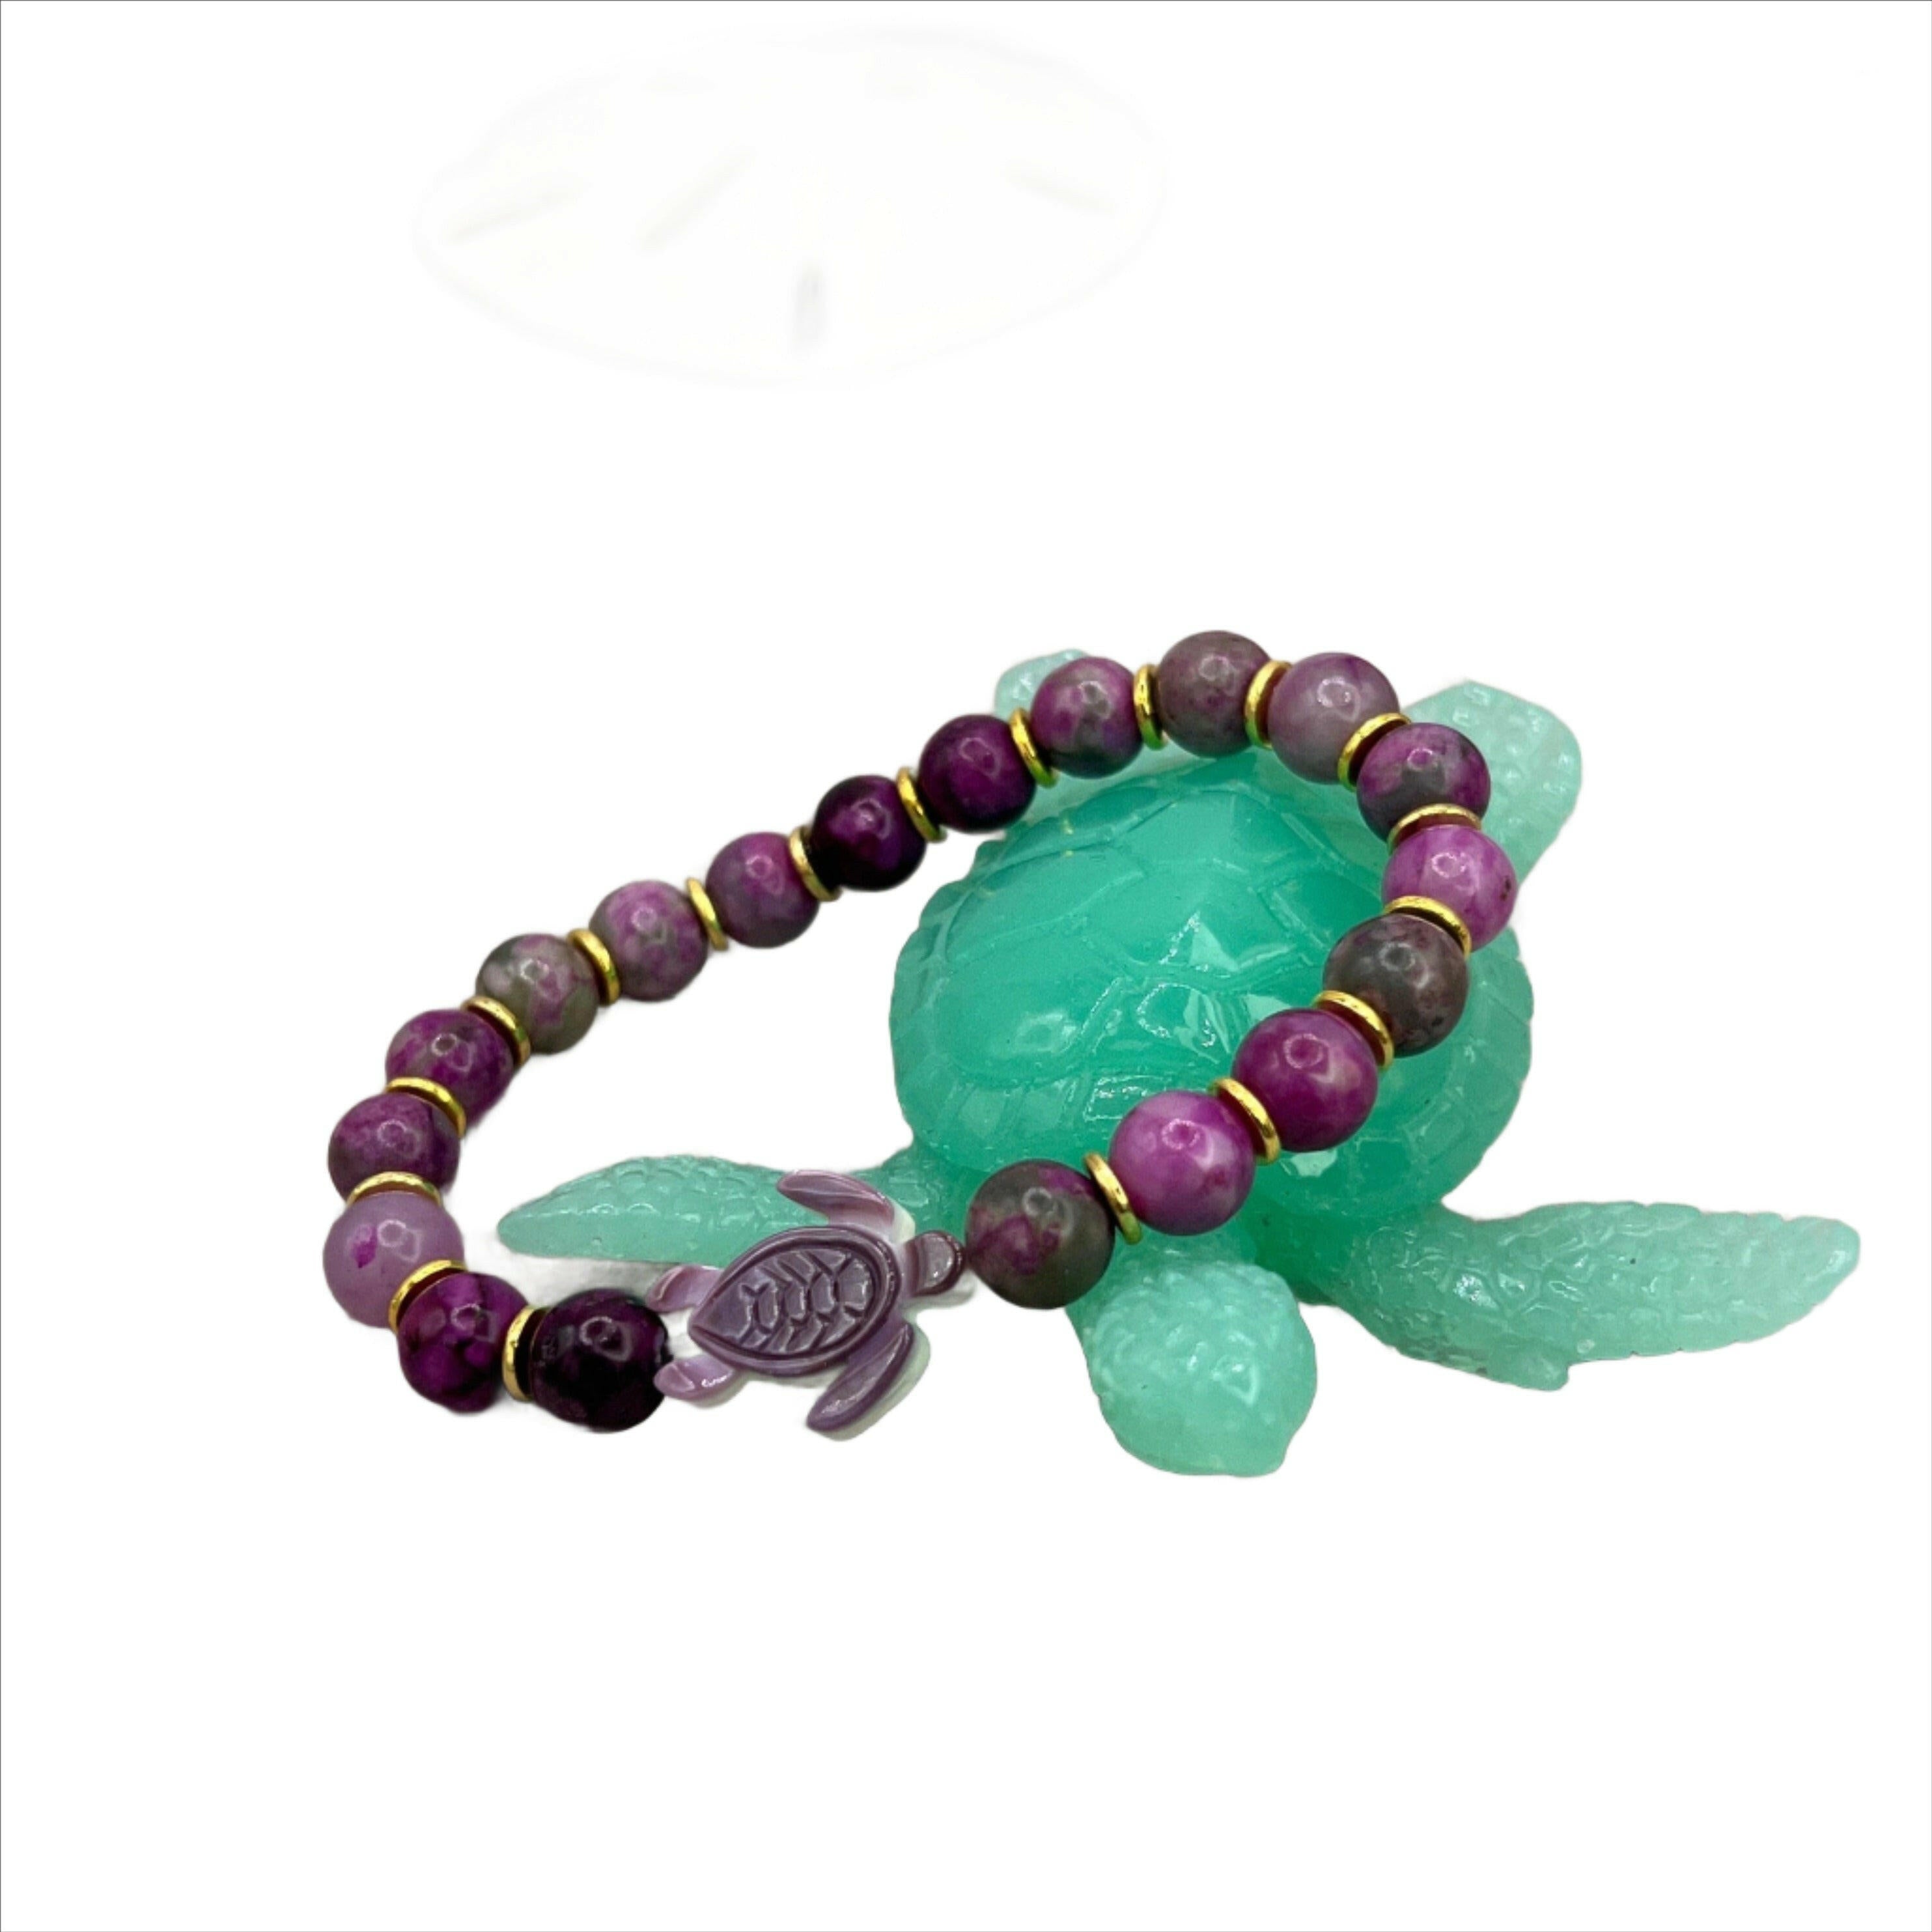 Exquisite sugilite jewelry featuring vibrant purple gemstones for elegant accessorizing.